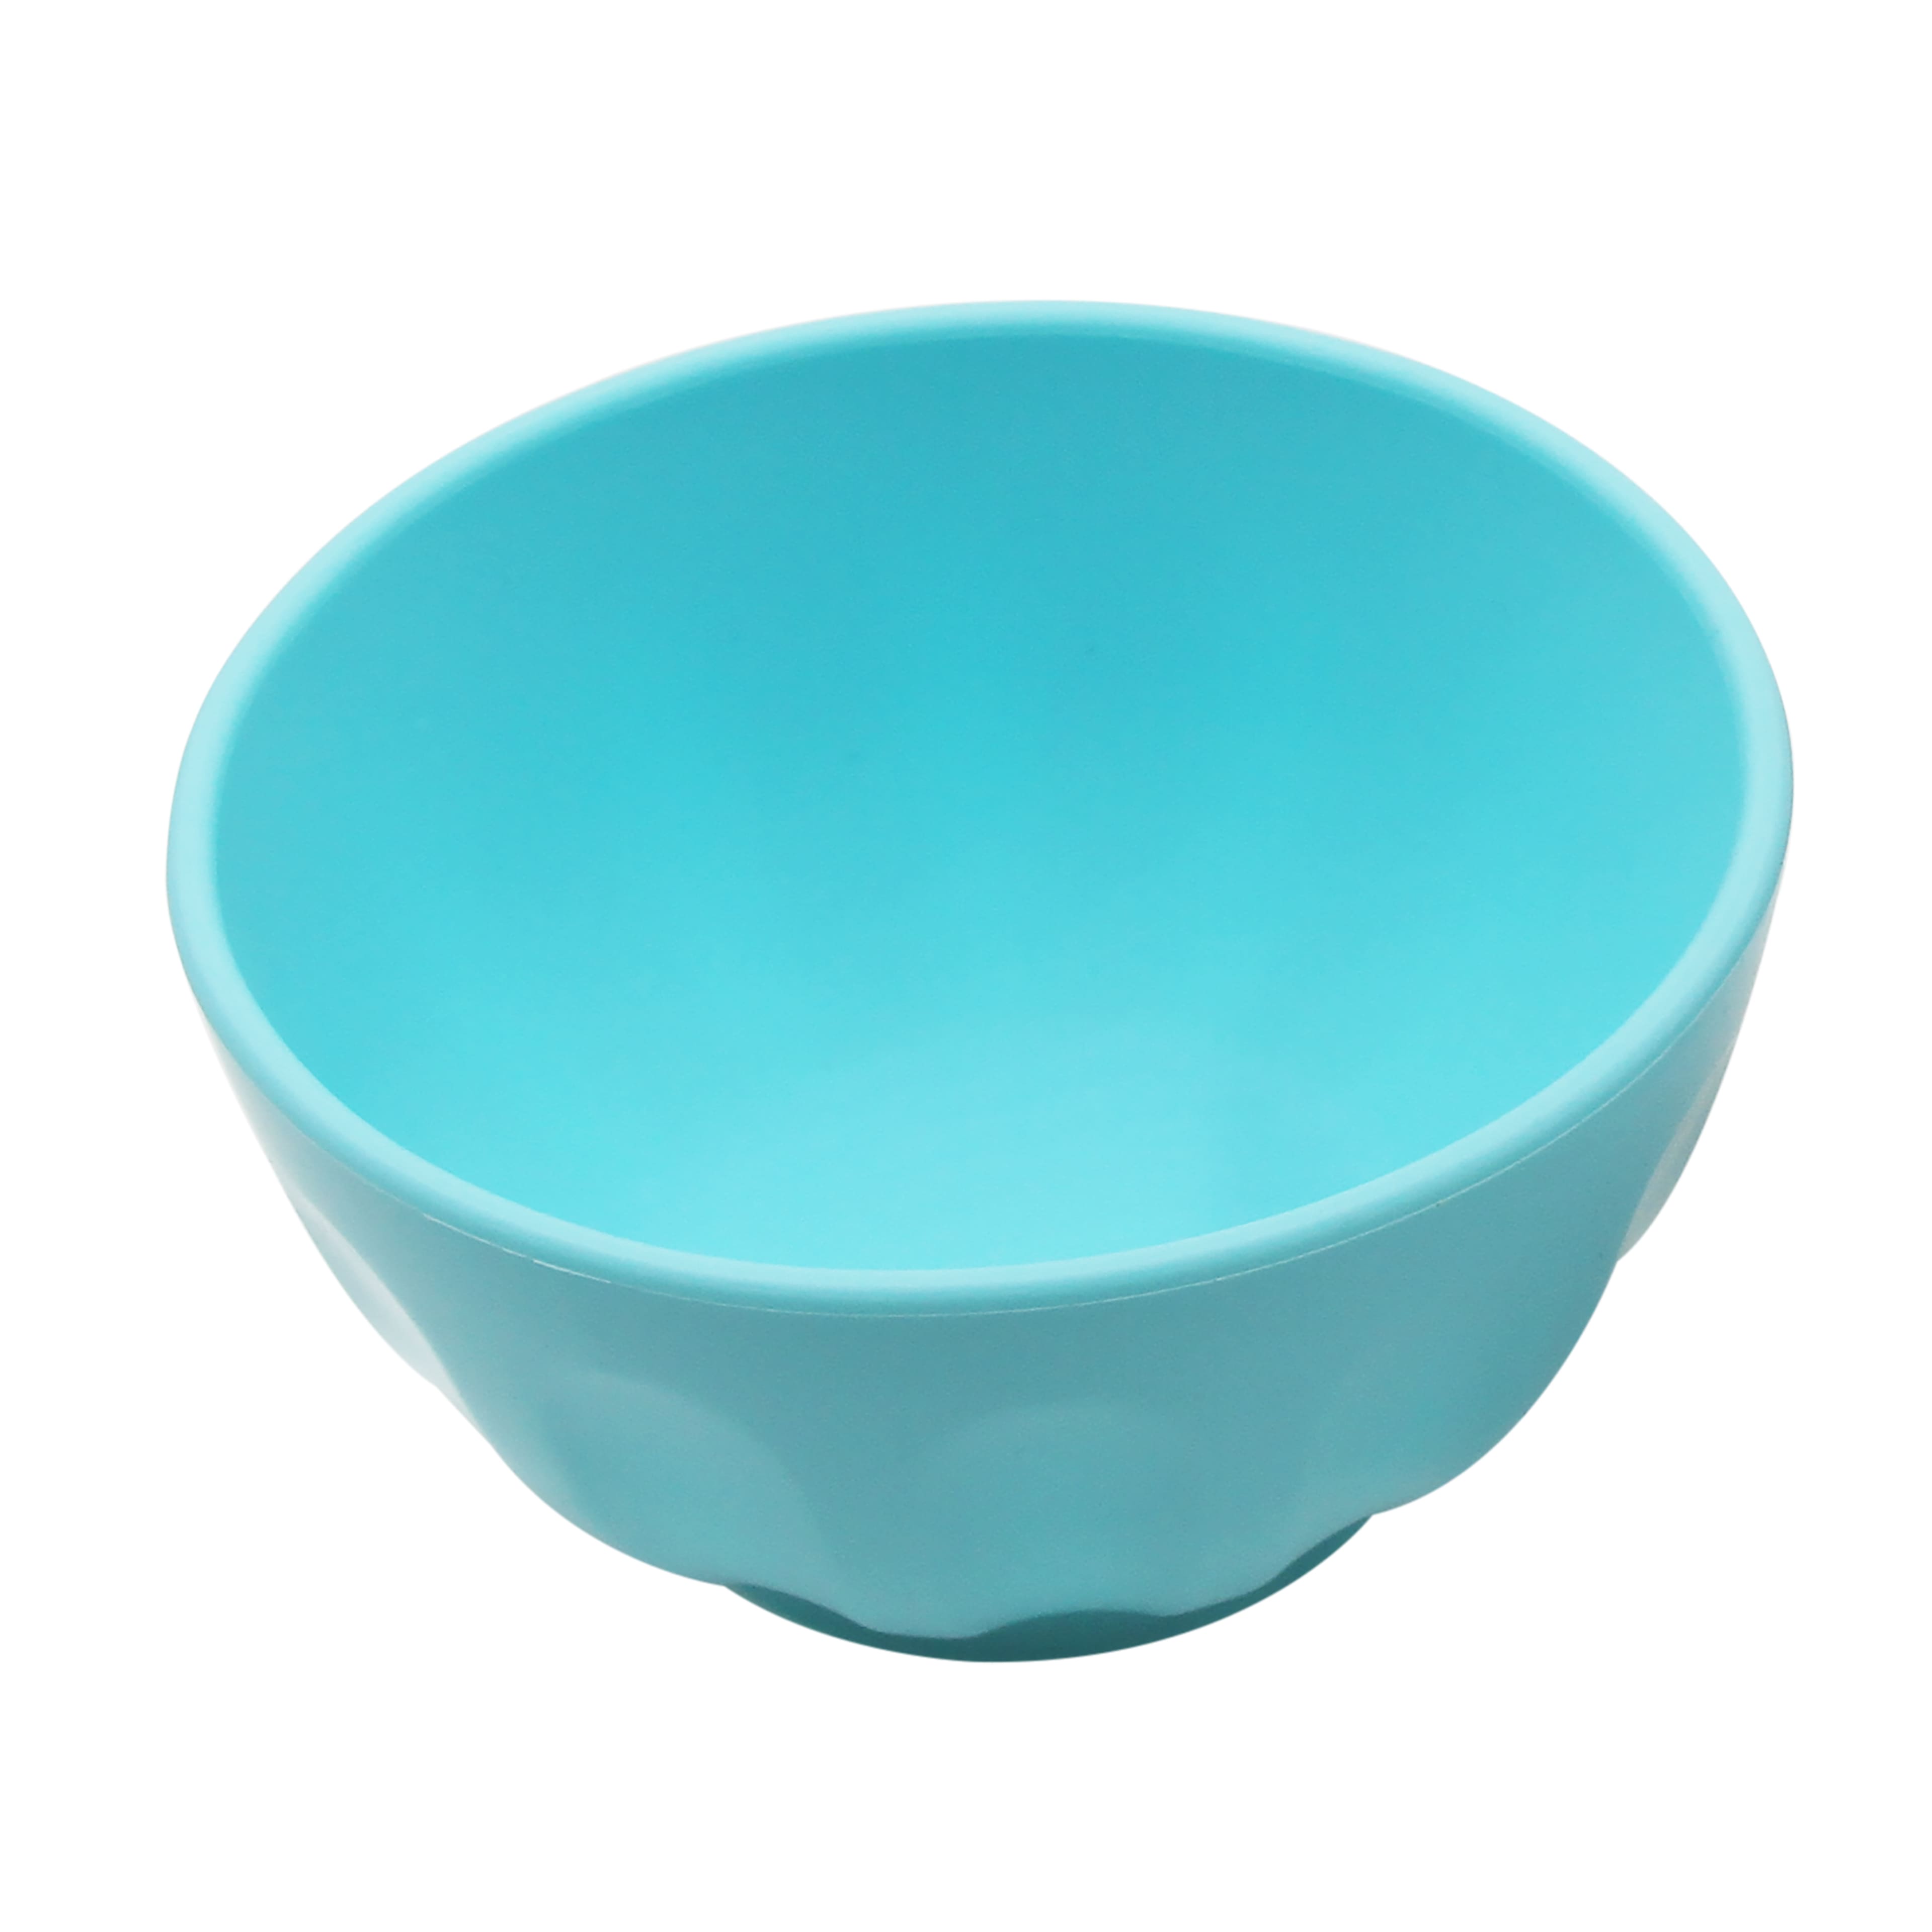 5qt. Clear Plastic Serving Bowl by Celebrate It | Michaels